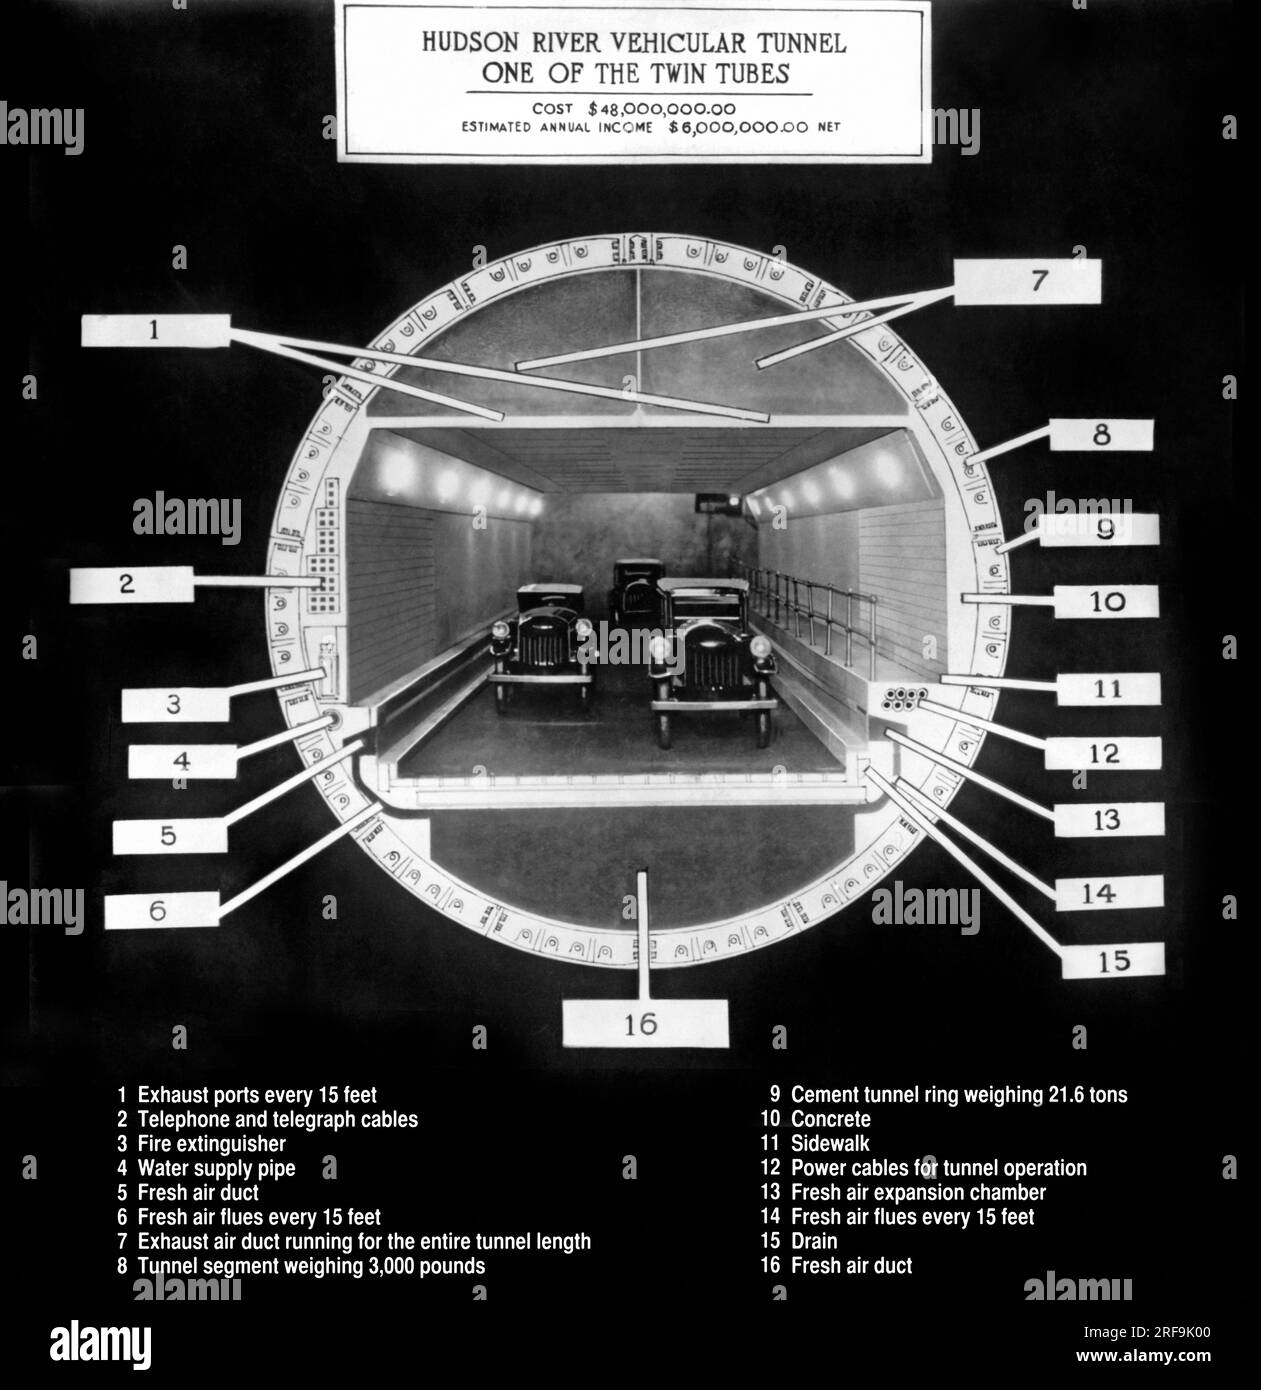 New York, New York: ca. 1922 Ein Querschnitt des Holland Tunnels, ein Wunderwerk der modernen Wissenschaft und all seine Merkmale: 1. Abluftflughäfen. 2. Telefon- und Telegrafenkabel. 3. Feuerlöscher. 4. Wasserversorgungsleitung. 5. Durchgehender Kanal für die Frischluftzufuhr. 6. Frischluftabzüge alle 15 Meter. 7. Abluftkanäle, die über die gesamte Länge des Tunnels verlaufen. 8. Tunnelsegment mit einem Gewicht von 3000 Kilo. 9. Gewicht des kompletten Rings 21,6 Tonnen. 10. Beton. 11. Bürgersteig. 12. Stromkabel für Tunnel. 13. Frischluft-Ausdehnungskammer. 14. Frischluftabzüge alle 15 Meter. 15. Ablass. 16. Frischluftkanal, der die gesamte Länge führt Stockfoto